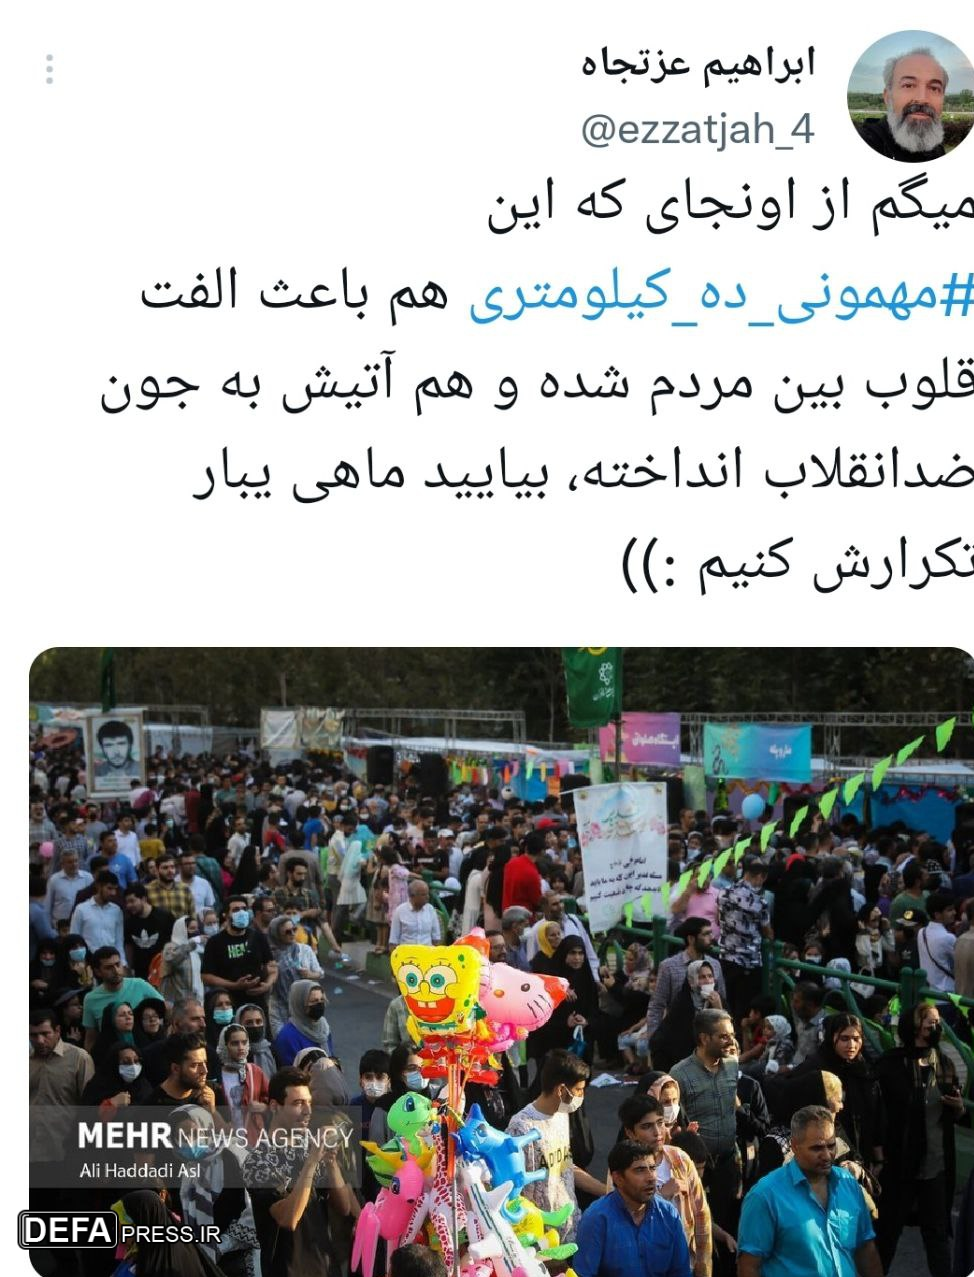 هشتگ «مهمونی ده کیلومتری» ترند برتر توییتر شد+ تصاویر